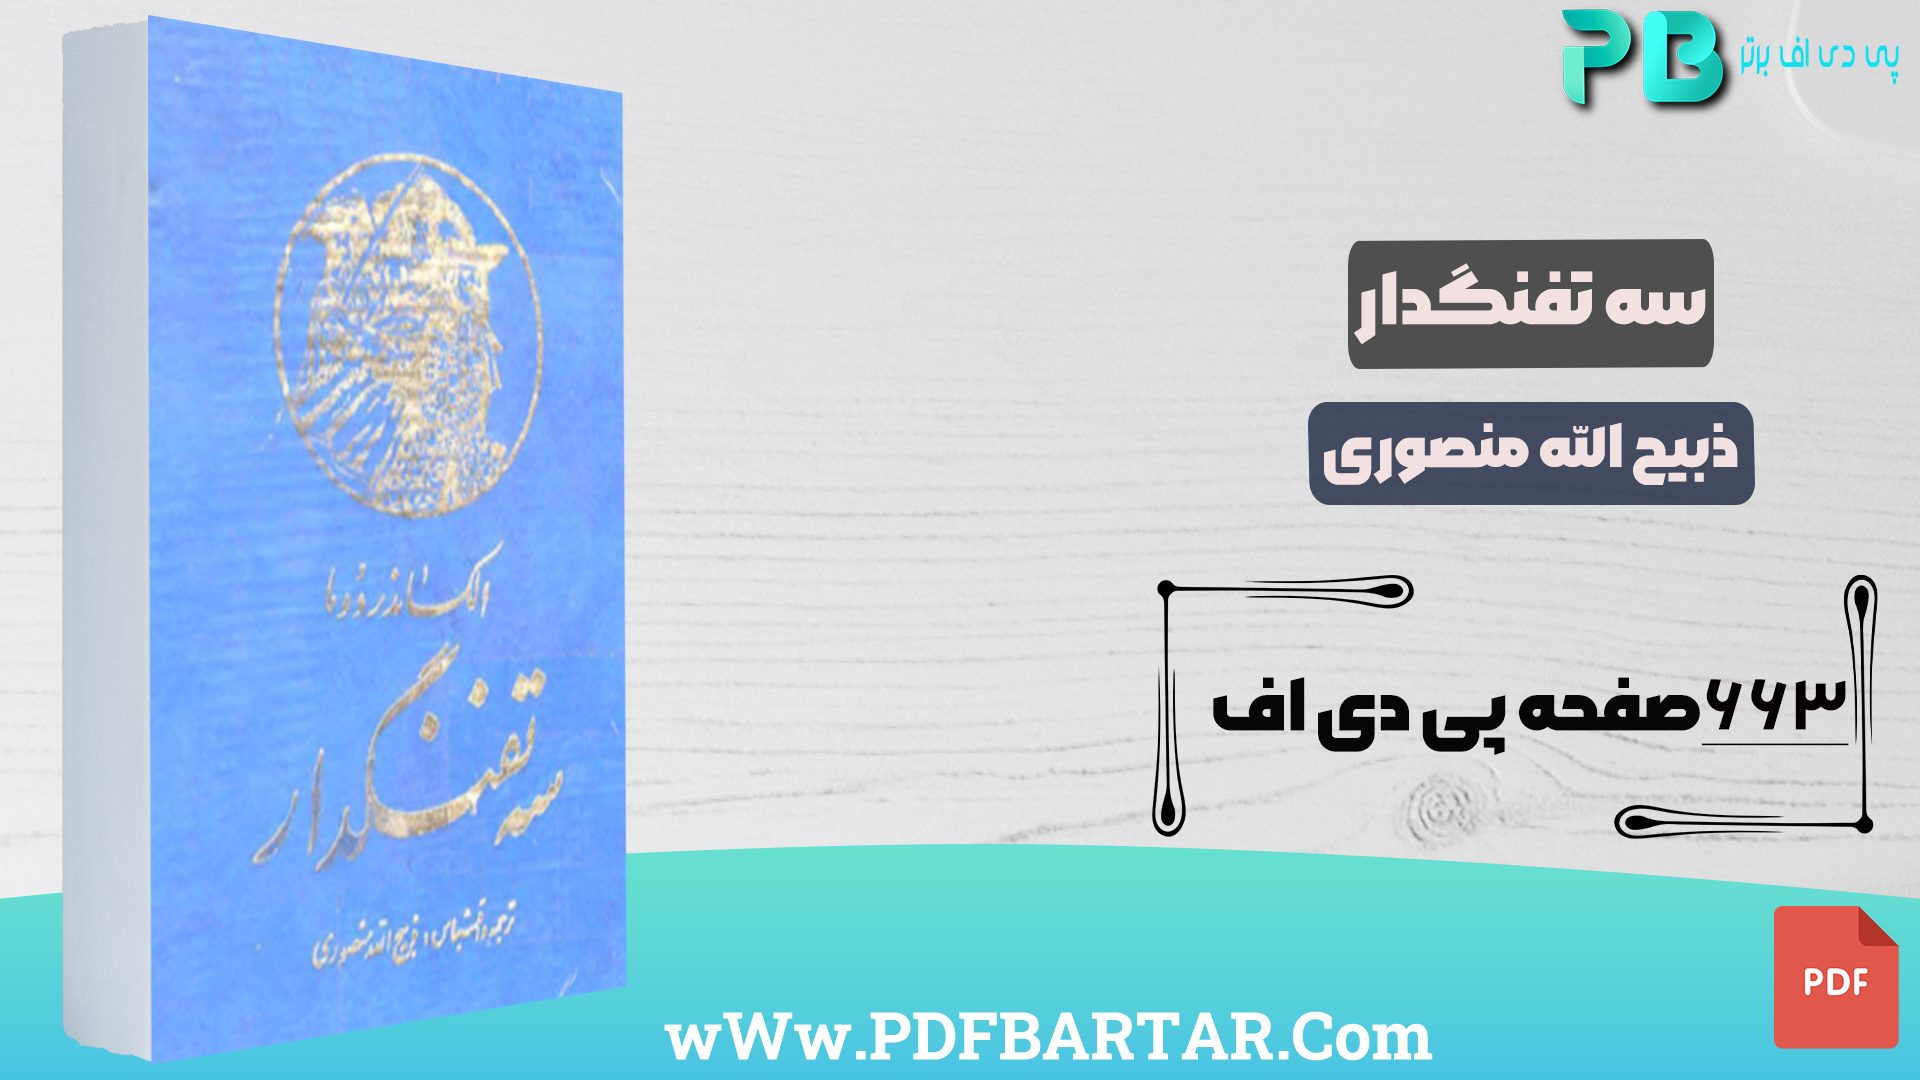 دانلود پی دی اف کتاب سه تفنگدار ذبیح الله منصوری PDF - پی دی اف برتر